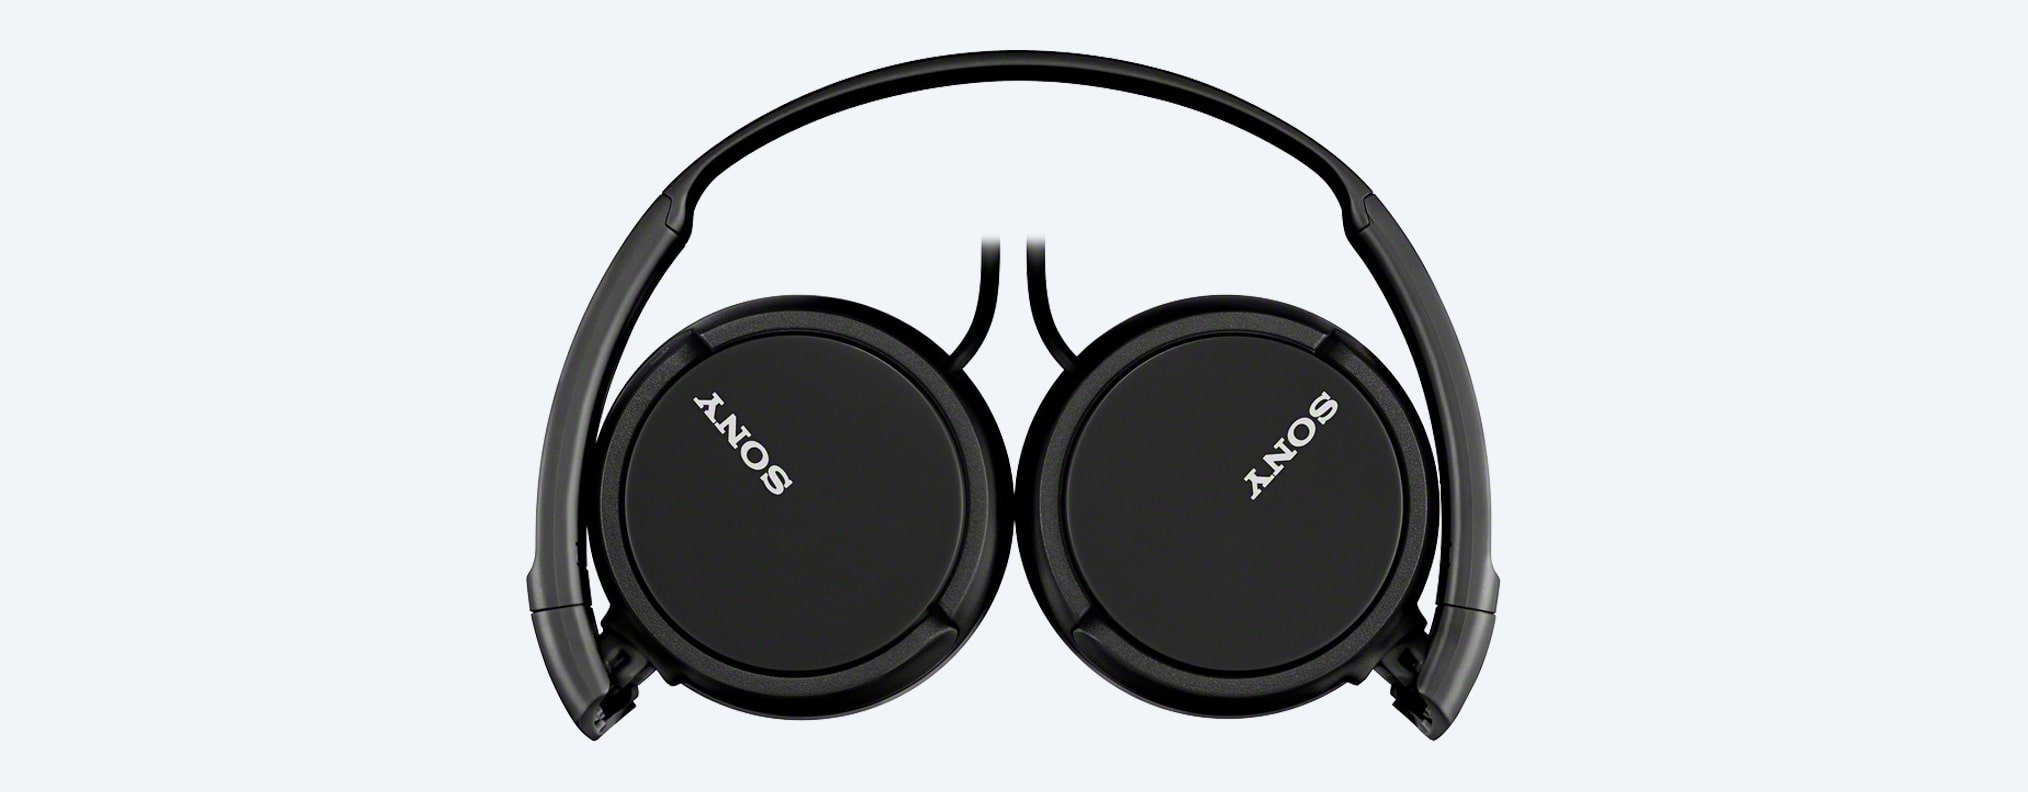 Słuchawki Sony nauszne MDR-ZX110 czarne złożone widok z góry